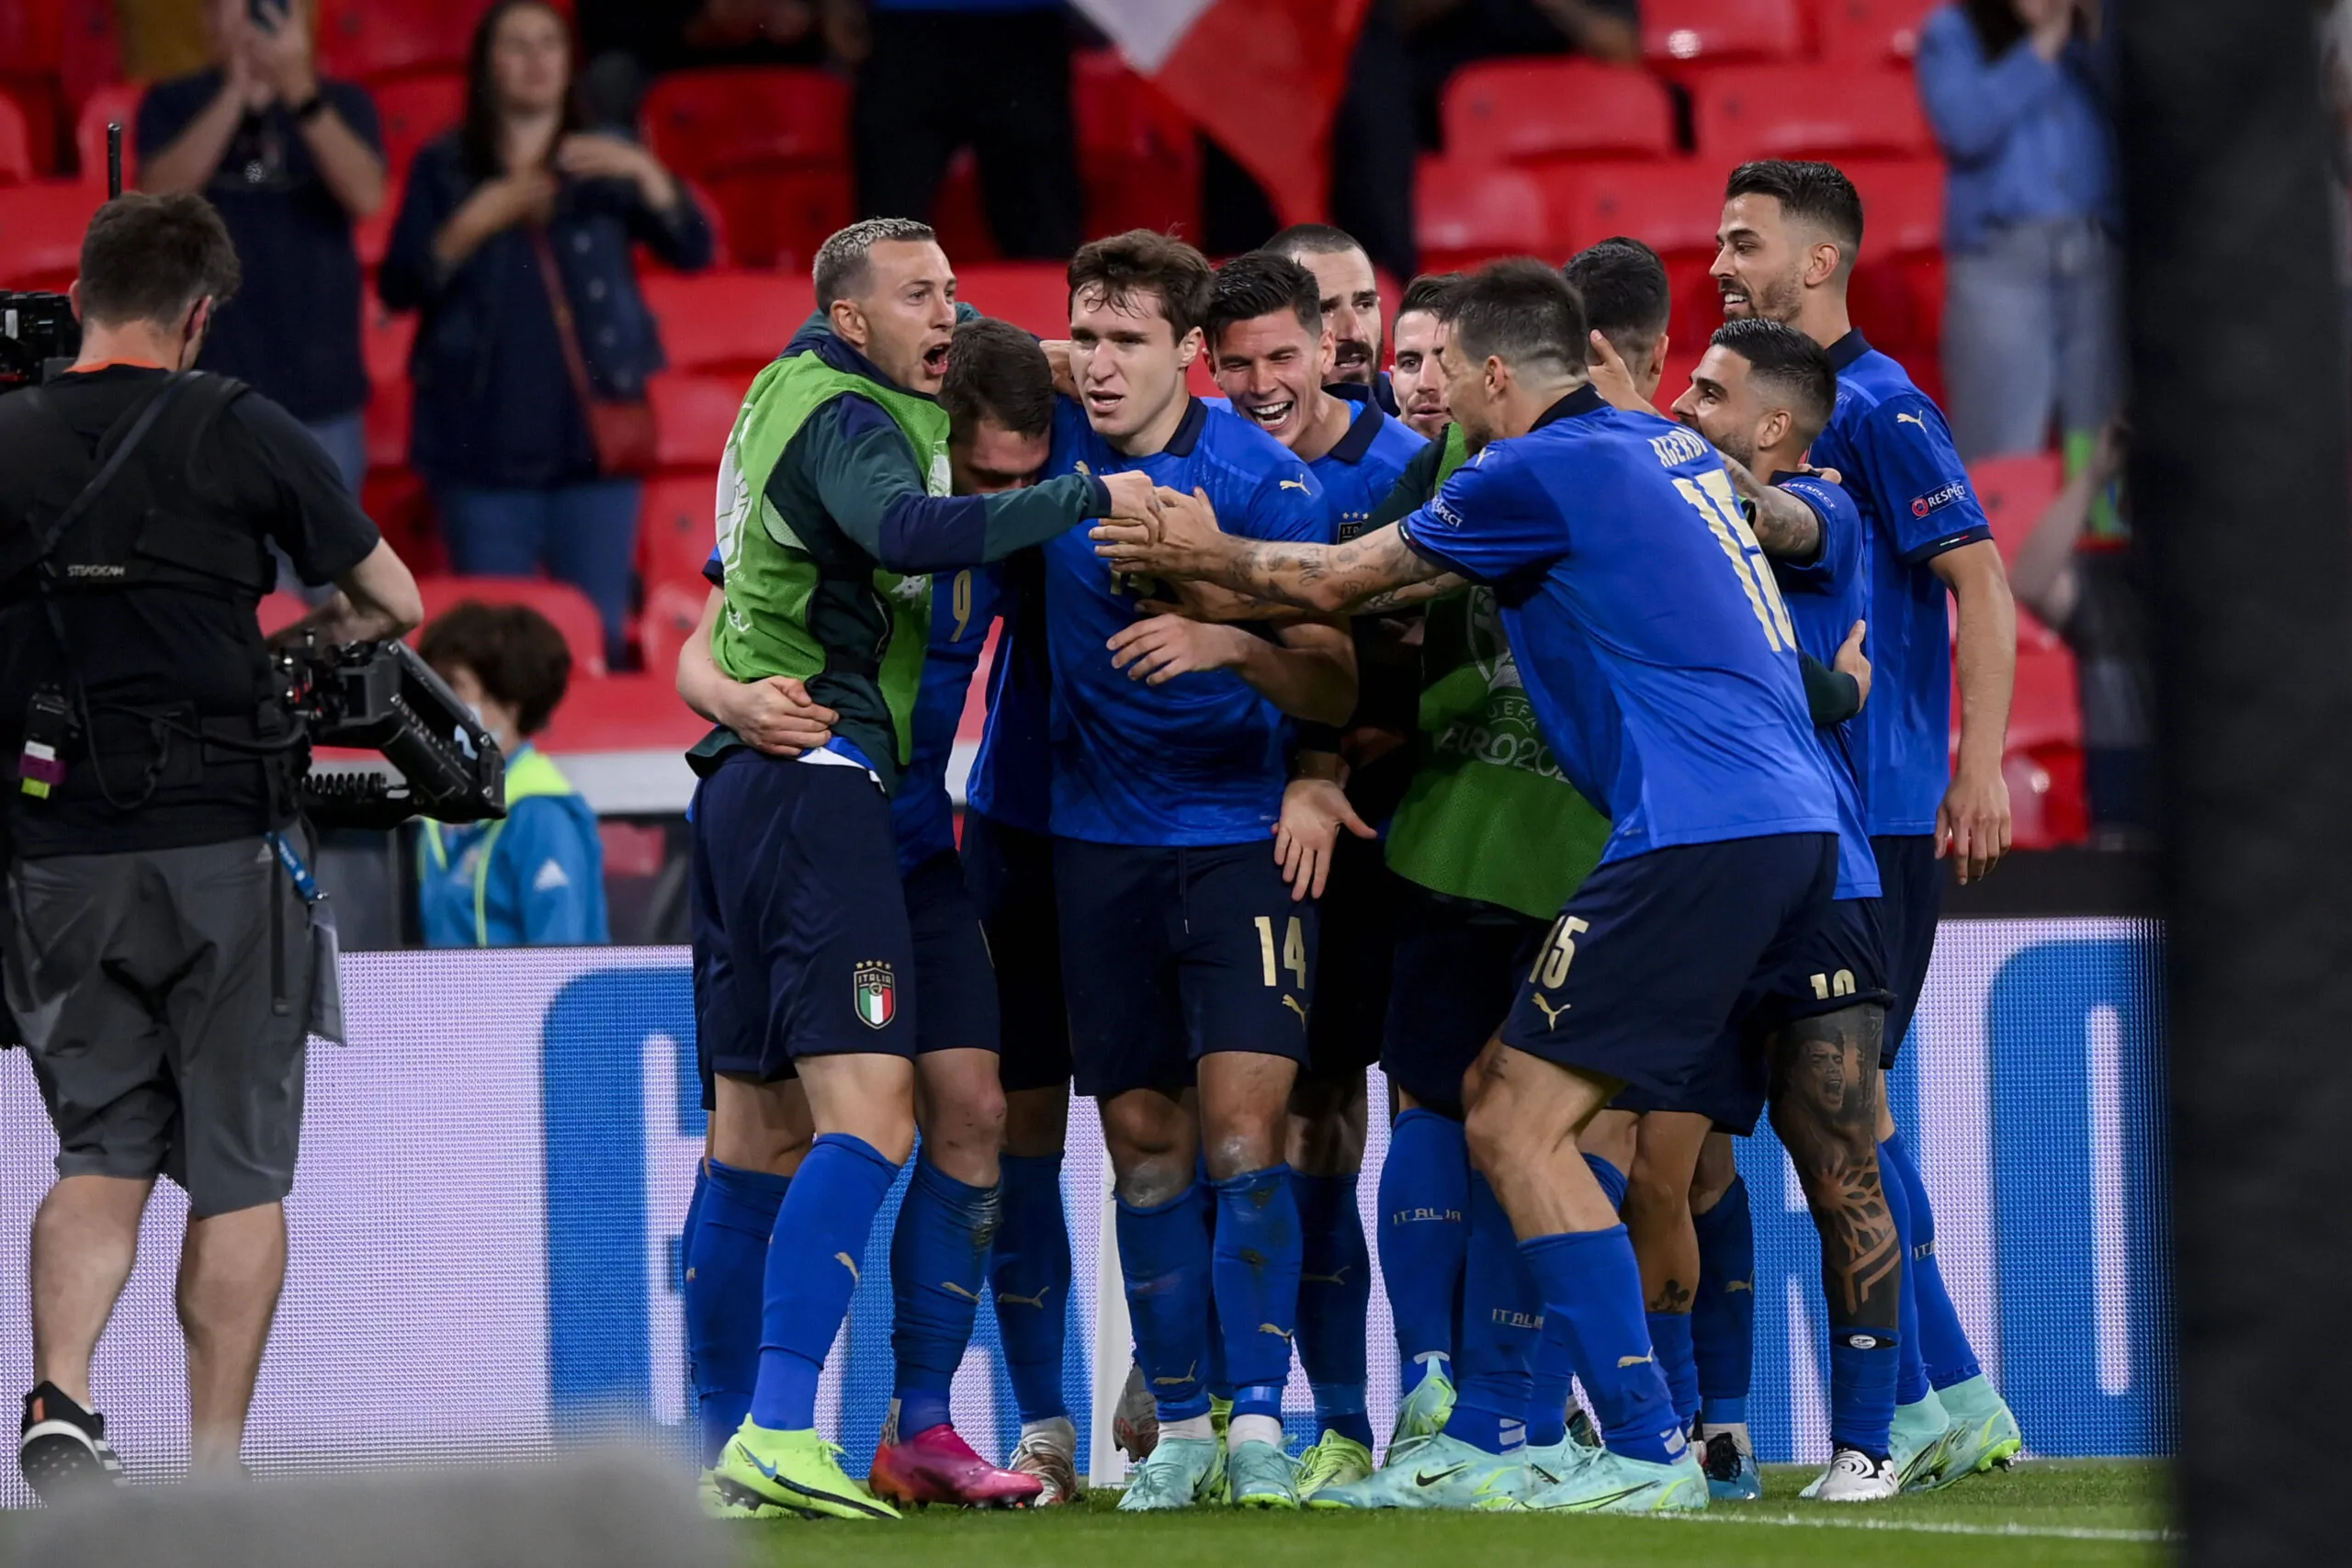 Il Trionfo Azzurro, l’Italia in festa, Mancini: “squadra meravigliosa, questa vittoria è per la gente”